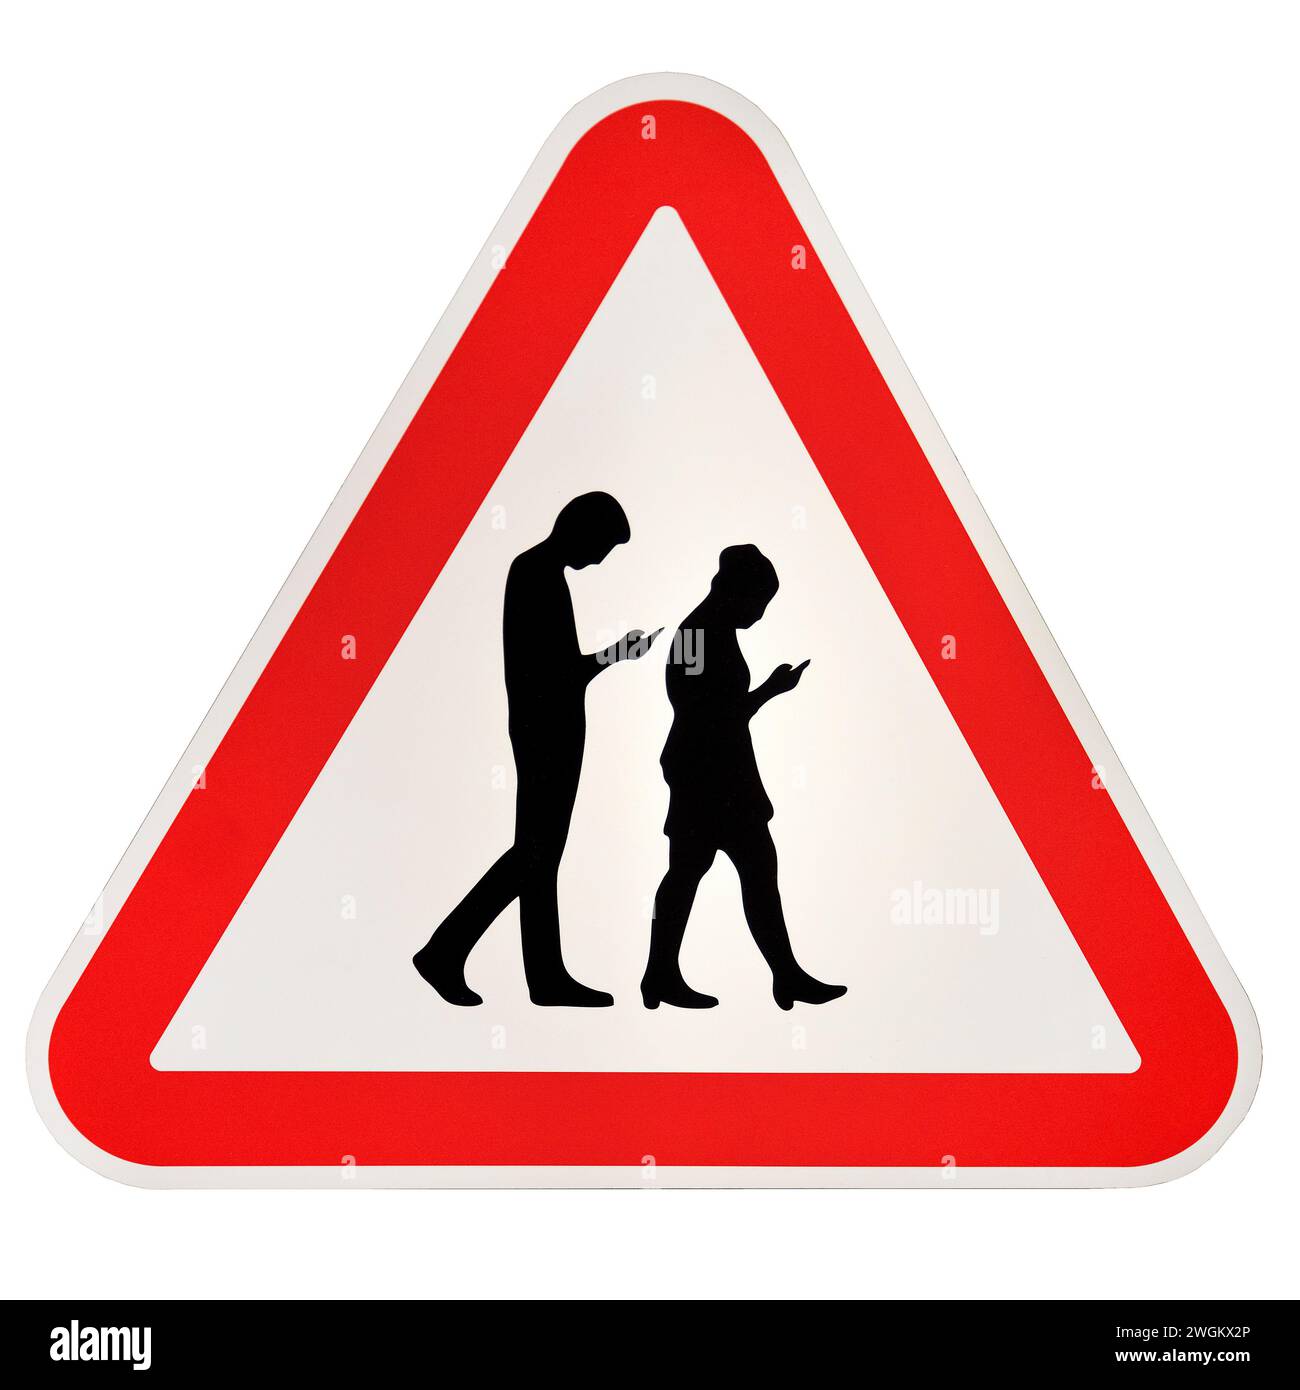 Signalisation routière fictive danger des utilisateurs de téléphones portables, photomontage Banque D'Images